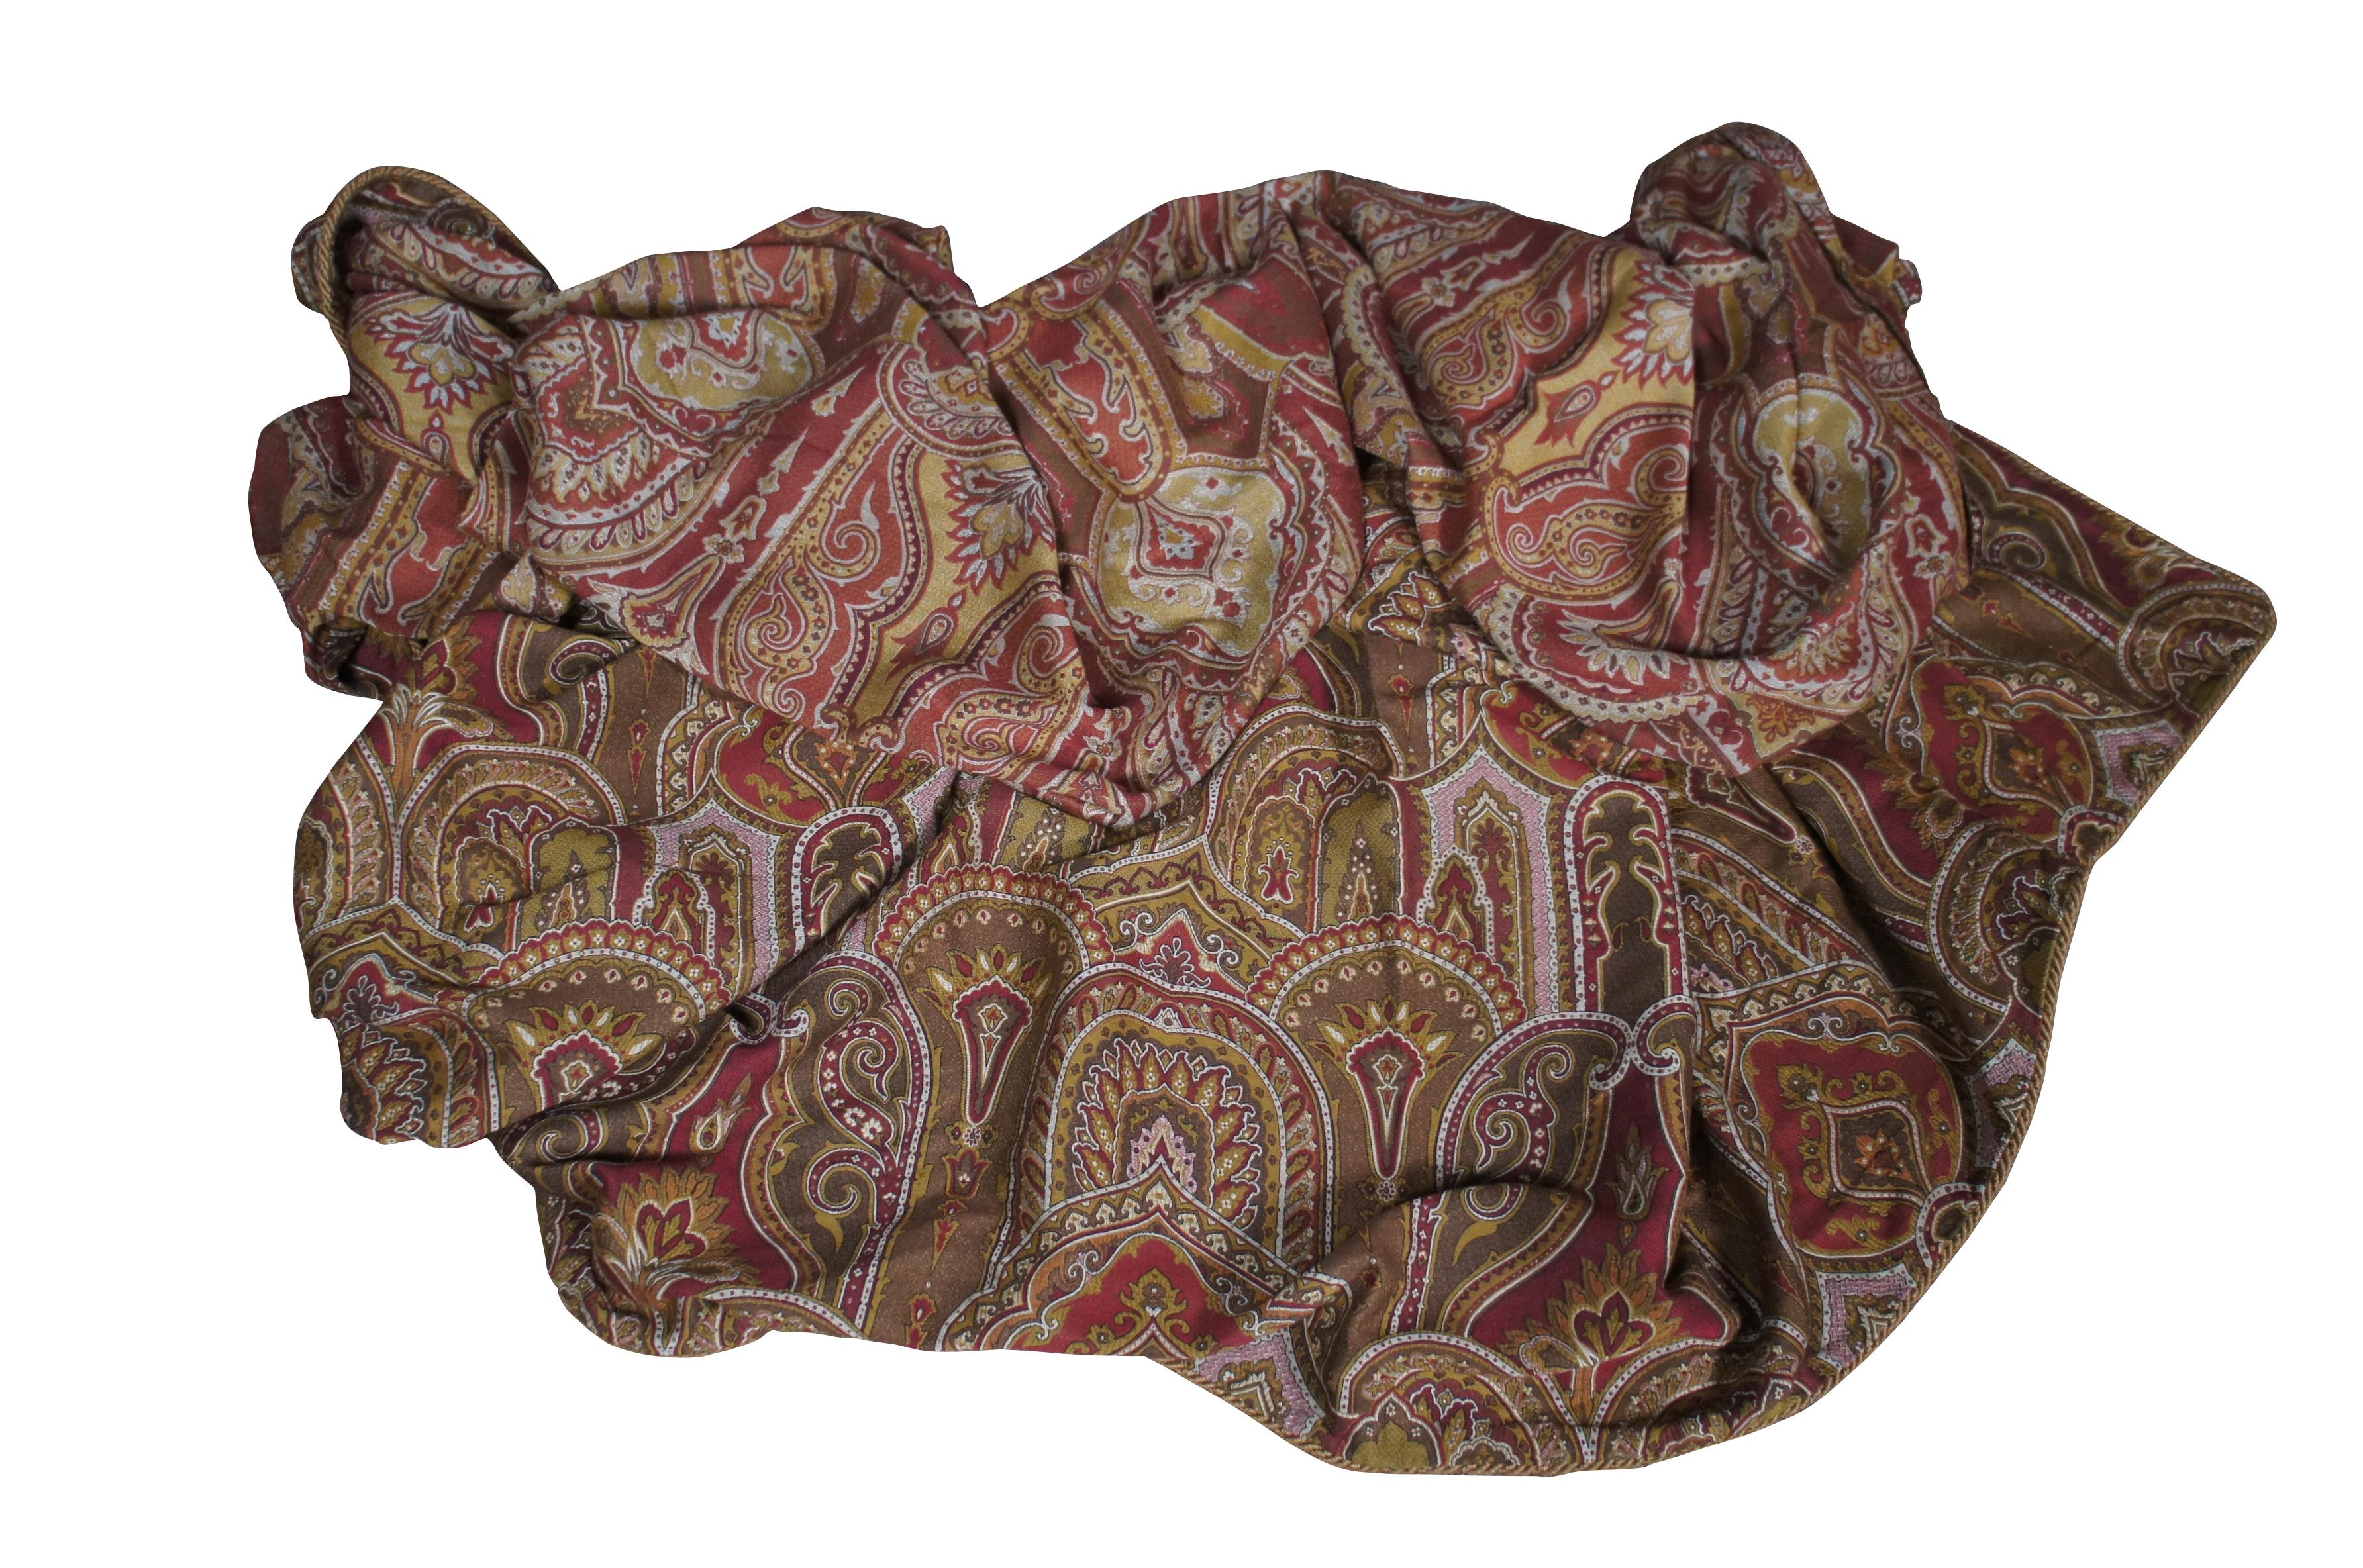 Beeindruckende Vintage Anchini King Größe Decke / dekorative counterpane. 100% Viskose mit einem kaschmirisch / orientalisch inspirierten Design in Rot und Gold mit Kordelbordüren / Paspeln. MSRP ähnlicher neuer Bettdecken von Anchini: